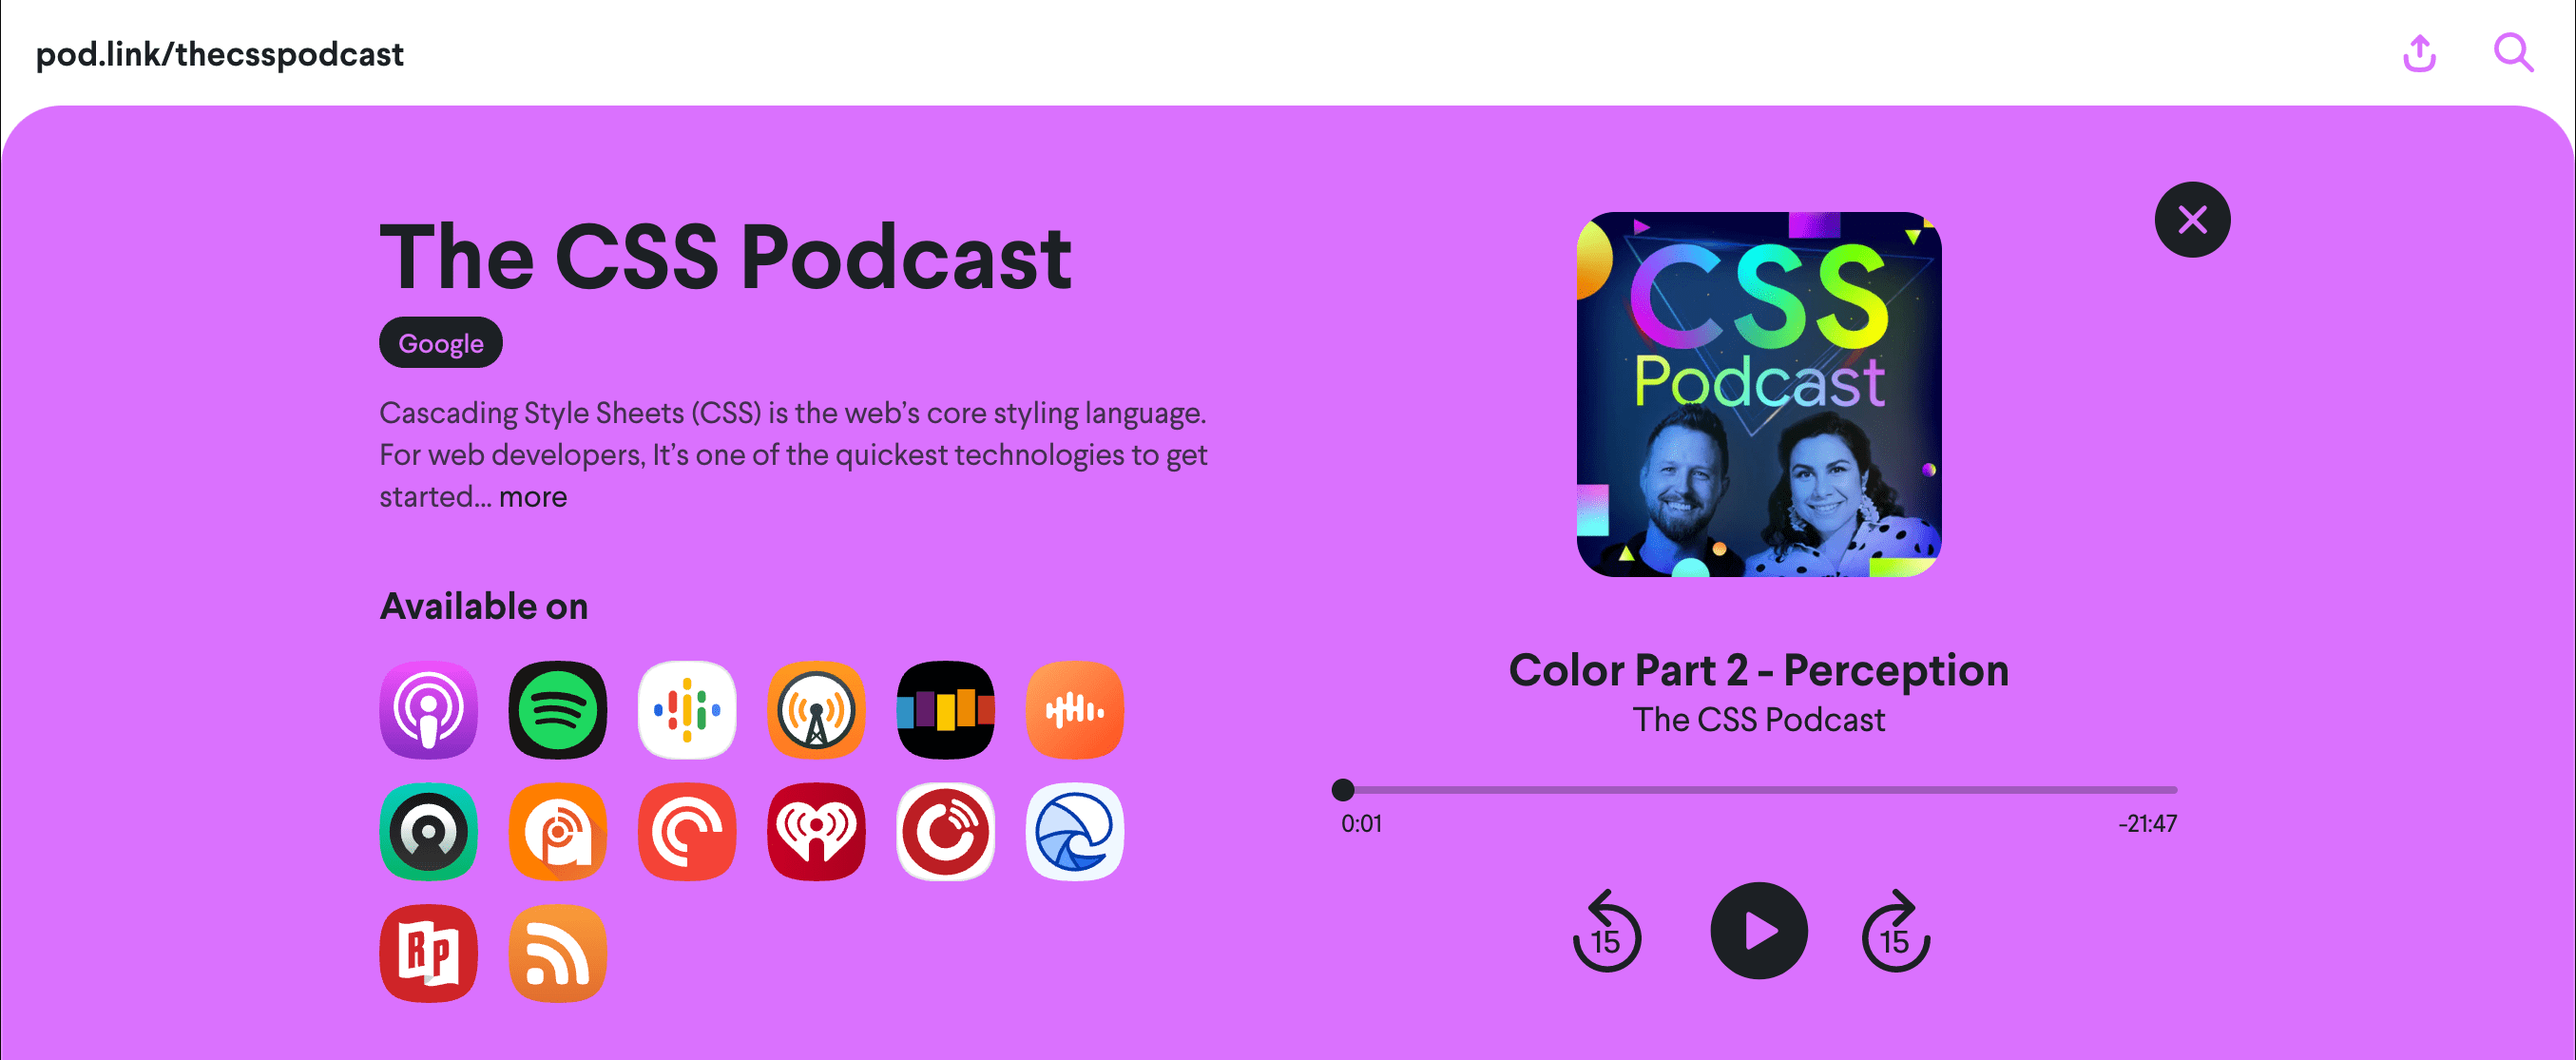 Zrzut ekranu strony pod.link/csspodcast z wyświetlonym odcinkiem Kolor 2: Percepcja